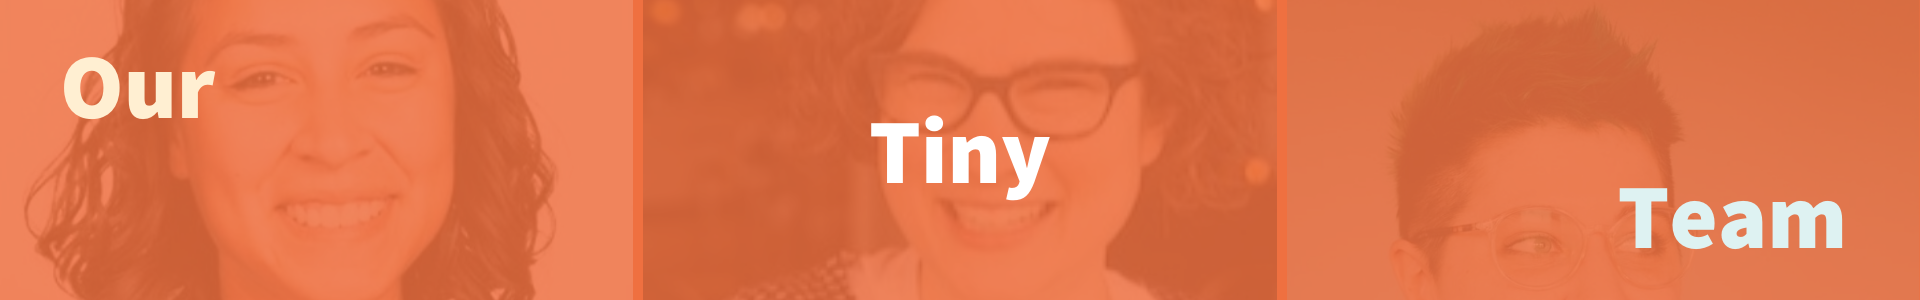 TinyPlanet Team graphic